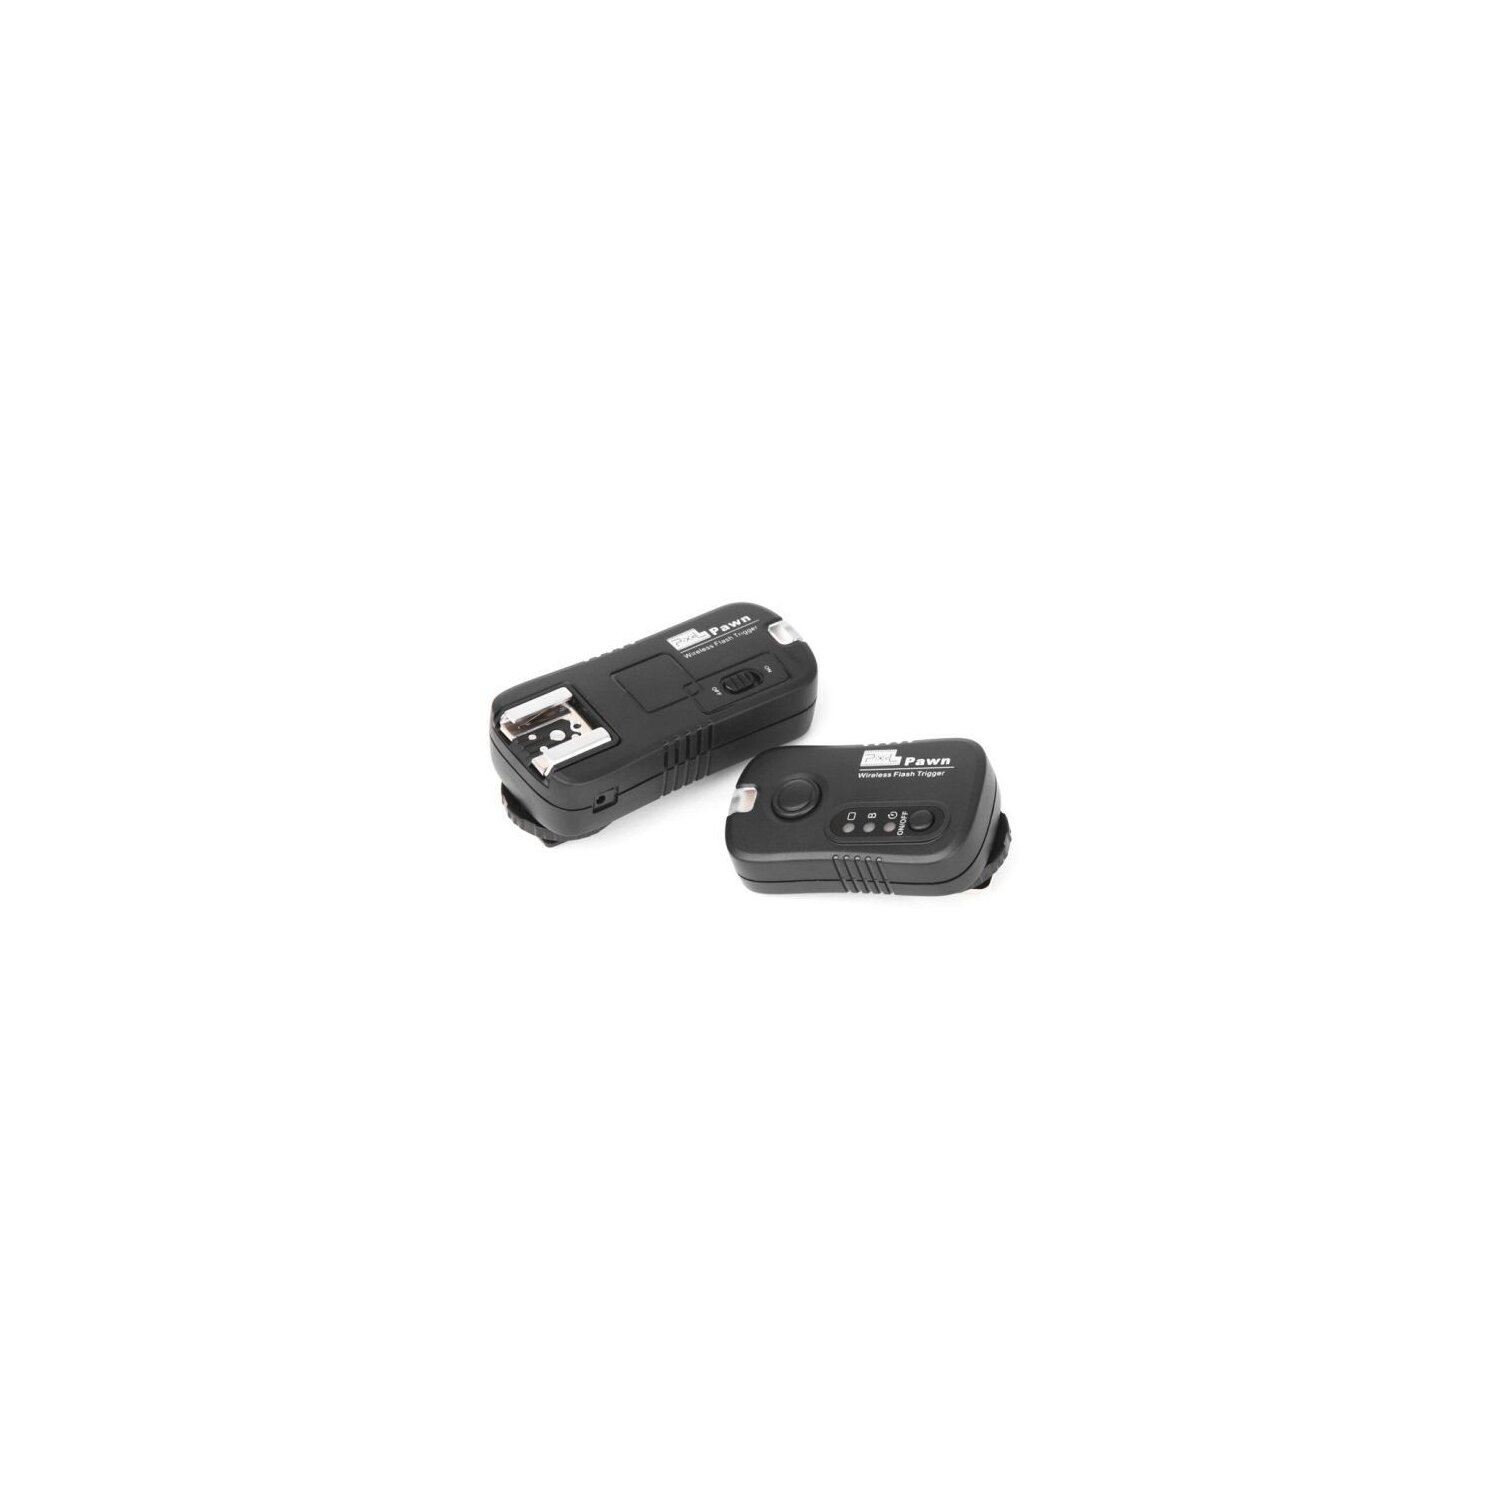 Impulsfoto Pixel Pawn TF-362 Funk Blitzauslöser Set mit 3 Empfängern bis 100m kompatibel mit Nikon Blitzgeräte und Blitz Funkauslöser Kamera 